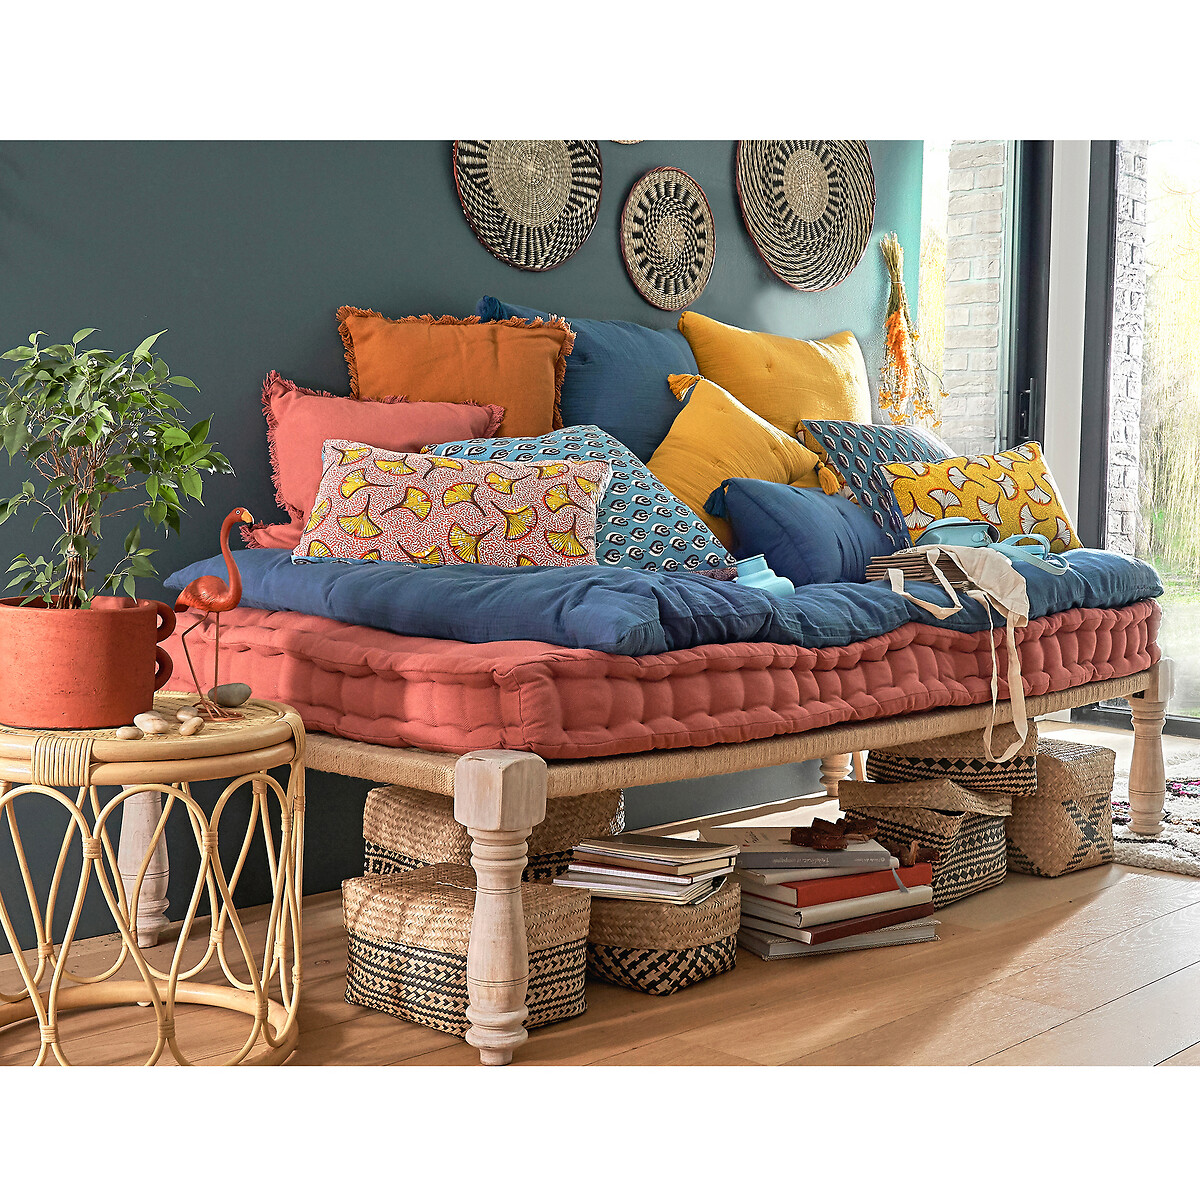 Panca/letto indiano adas in legno e corda La Redoute Interieurs